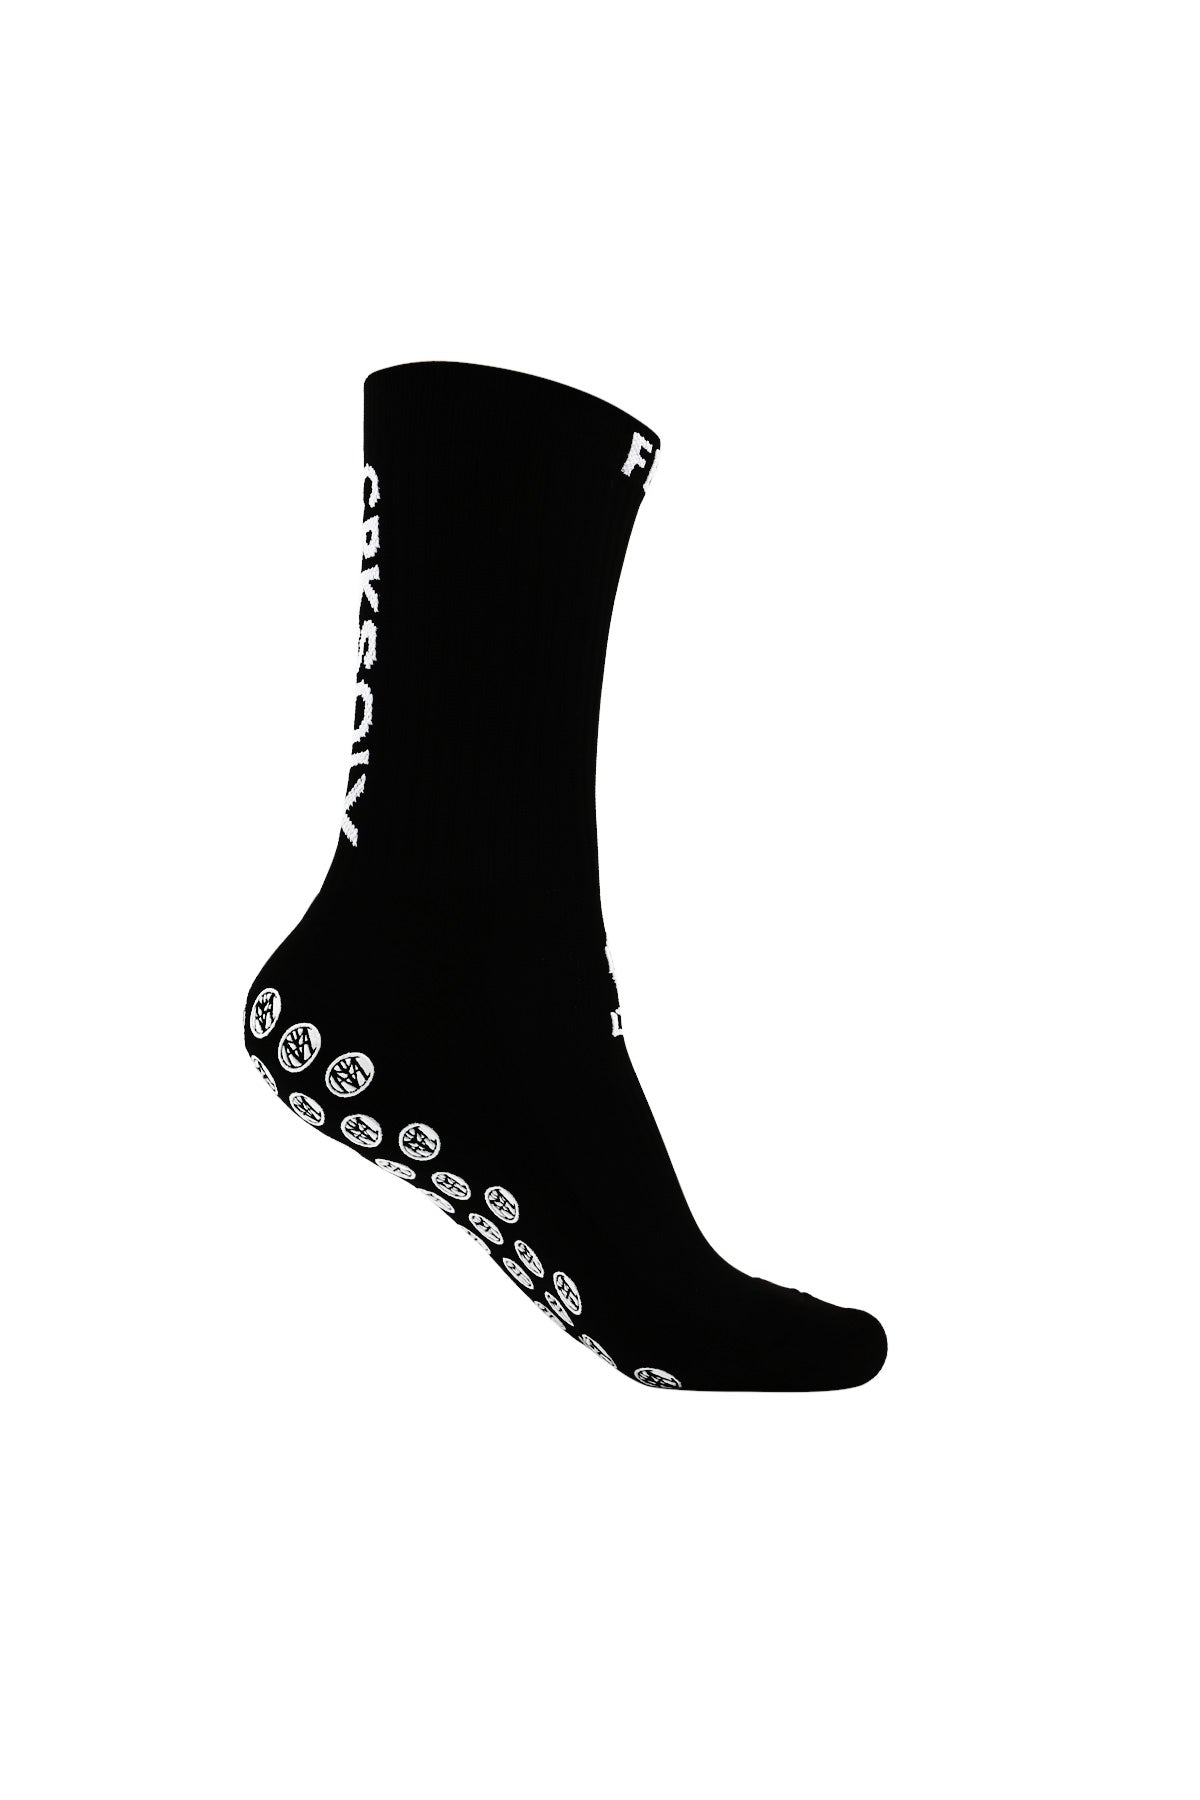 QCWQMYL Grip Socks for Men 1 Pairs Black Athletic Socks Non Skid